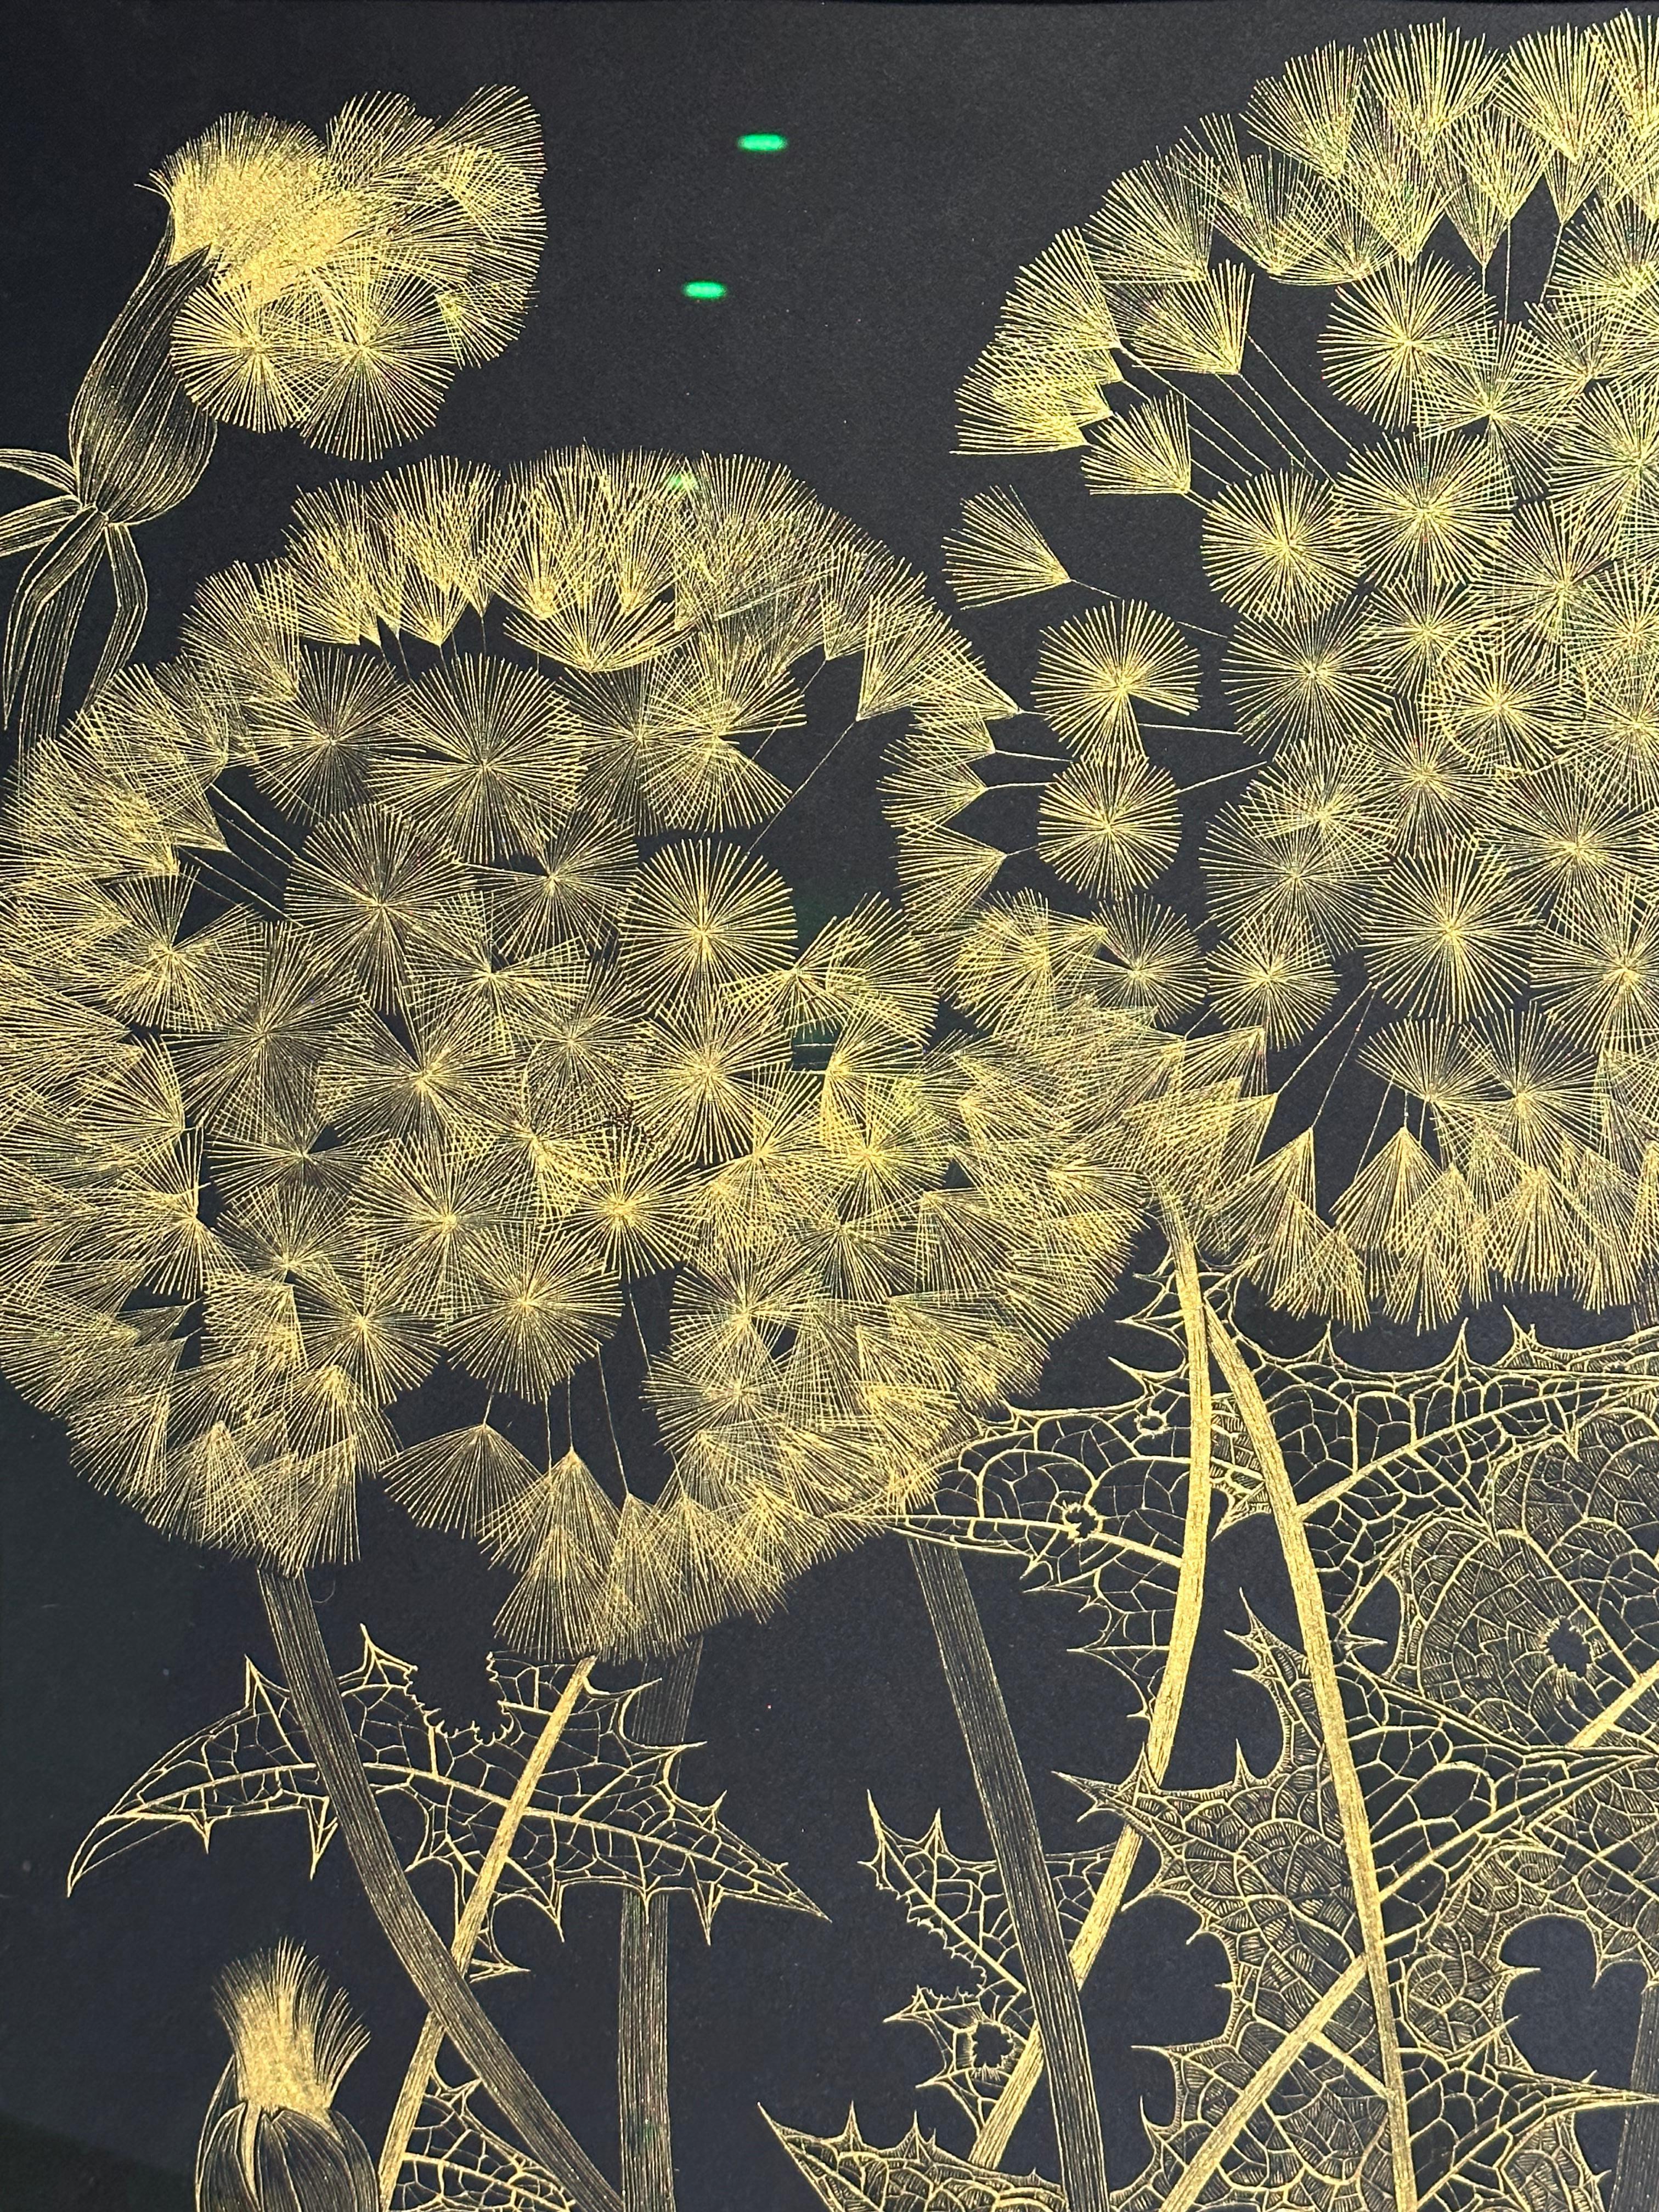 Diese zarte botanische Zeichnung wurde mit goldenem Acryl auf 140 lb Baumwollpapier angefertigt. Die Erforschung der Vergänglichkeit und der Zerbrechlichkeit einer wilden Pusteblume steht im Mittelpunkt dieses Gemäldes von Margot Glass. Die